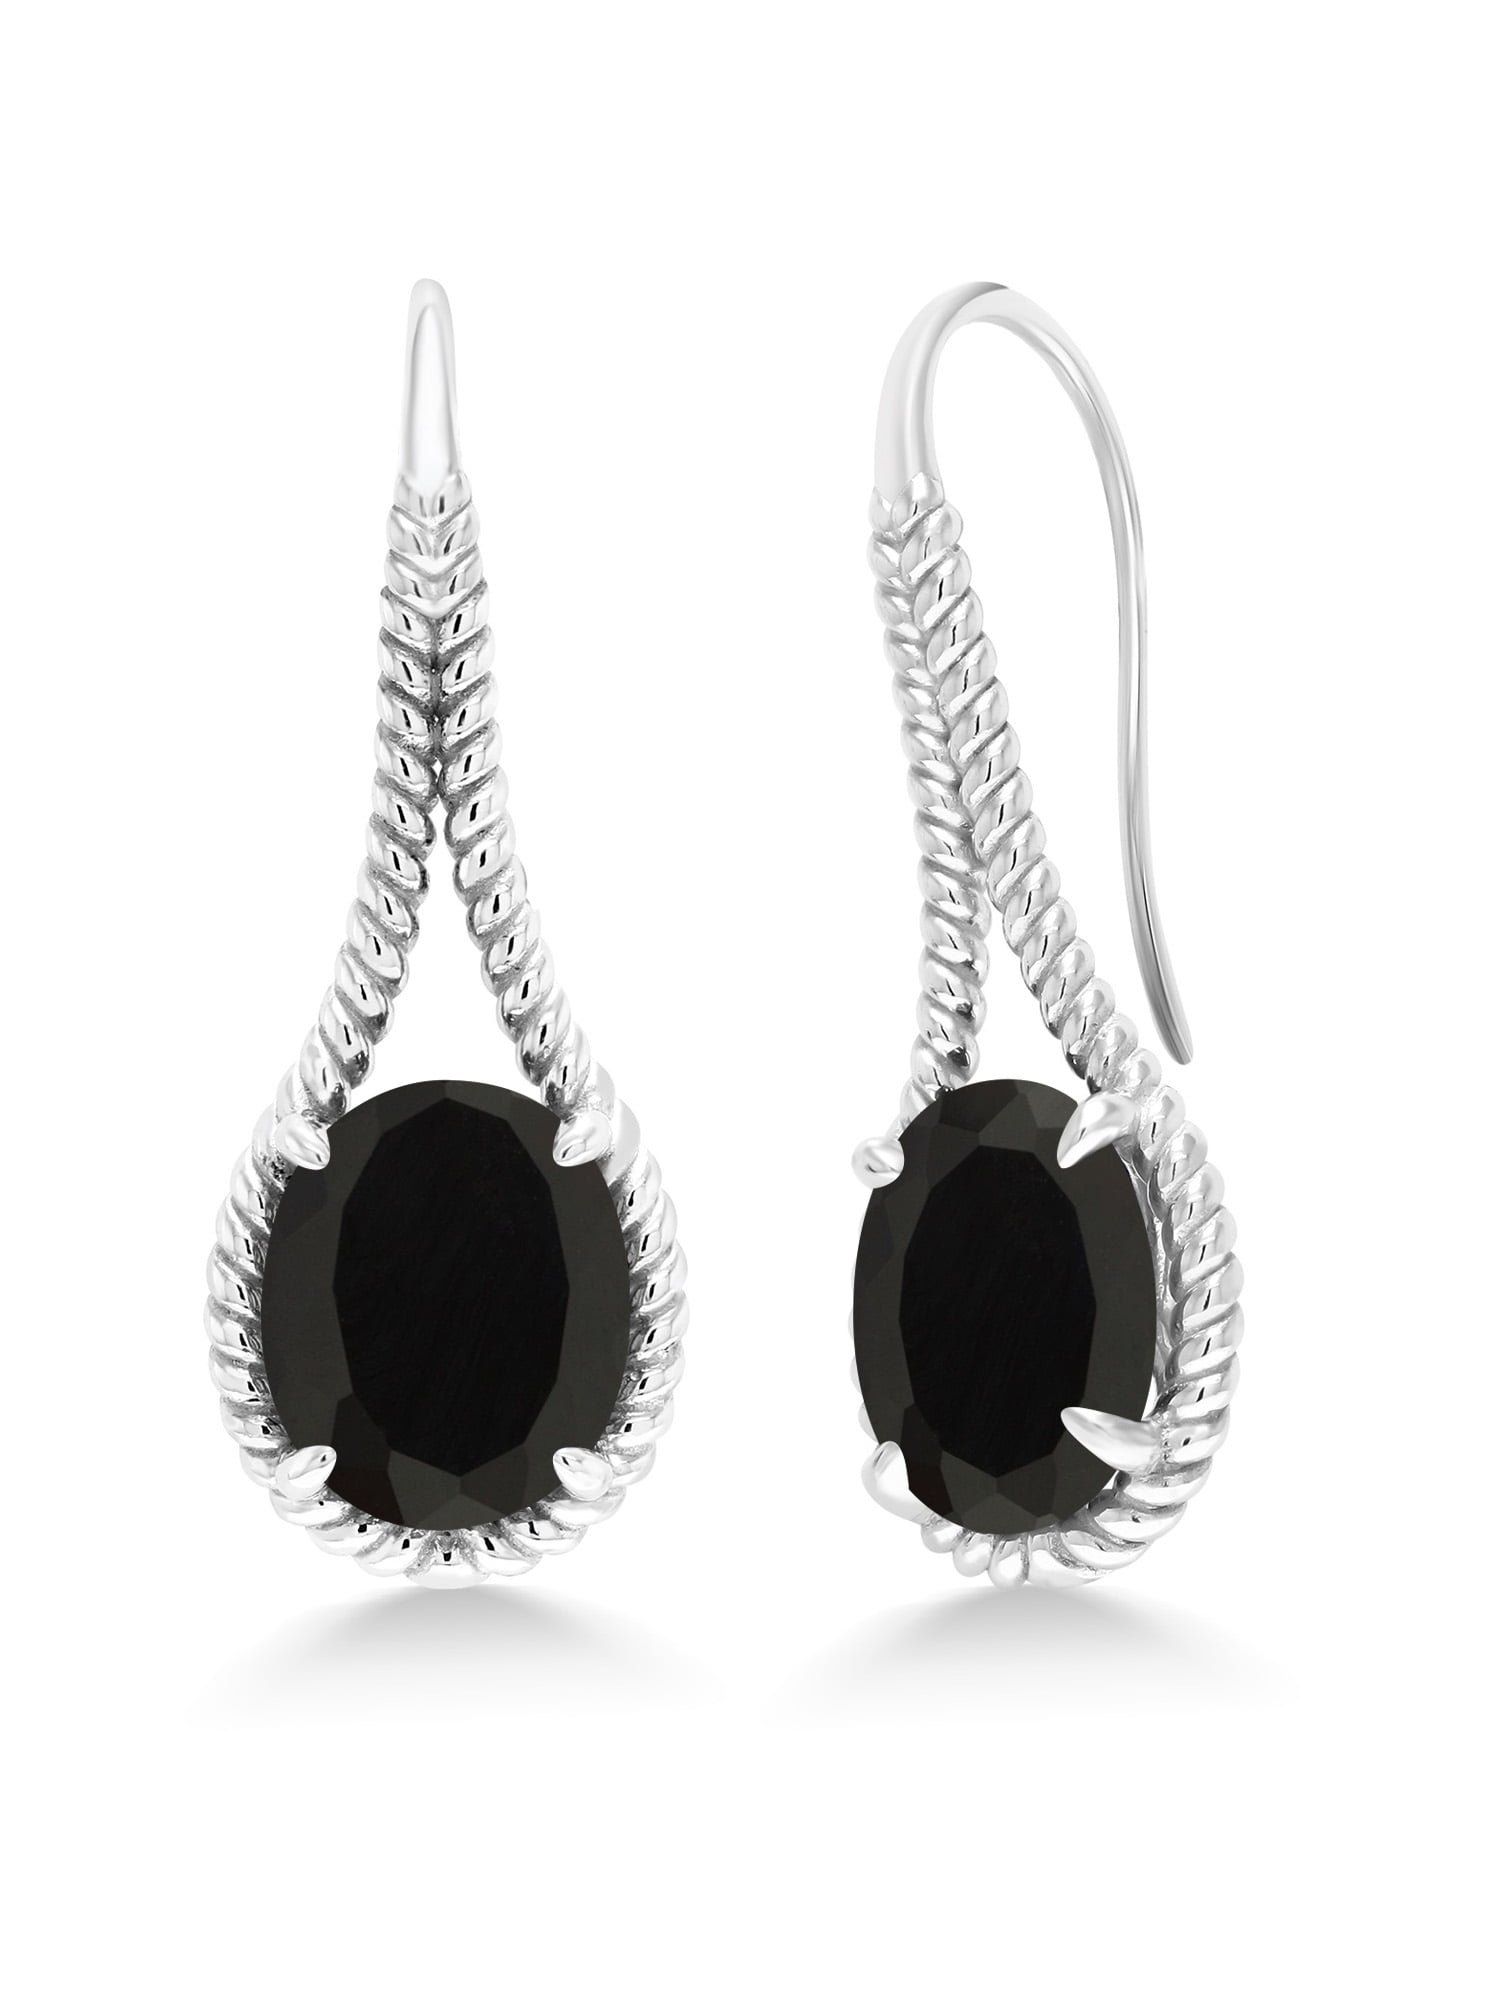 Black Onyx Pear-Shaped 925 Sterling Silver Dangle Earrings Corona Sun Jewelry 